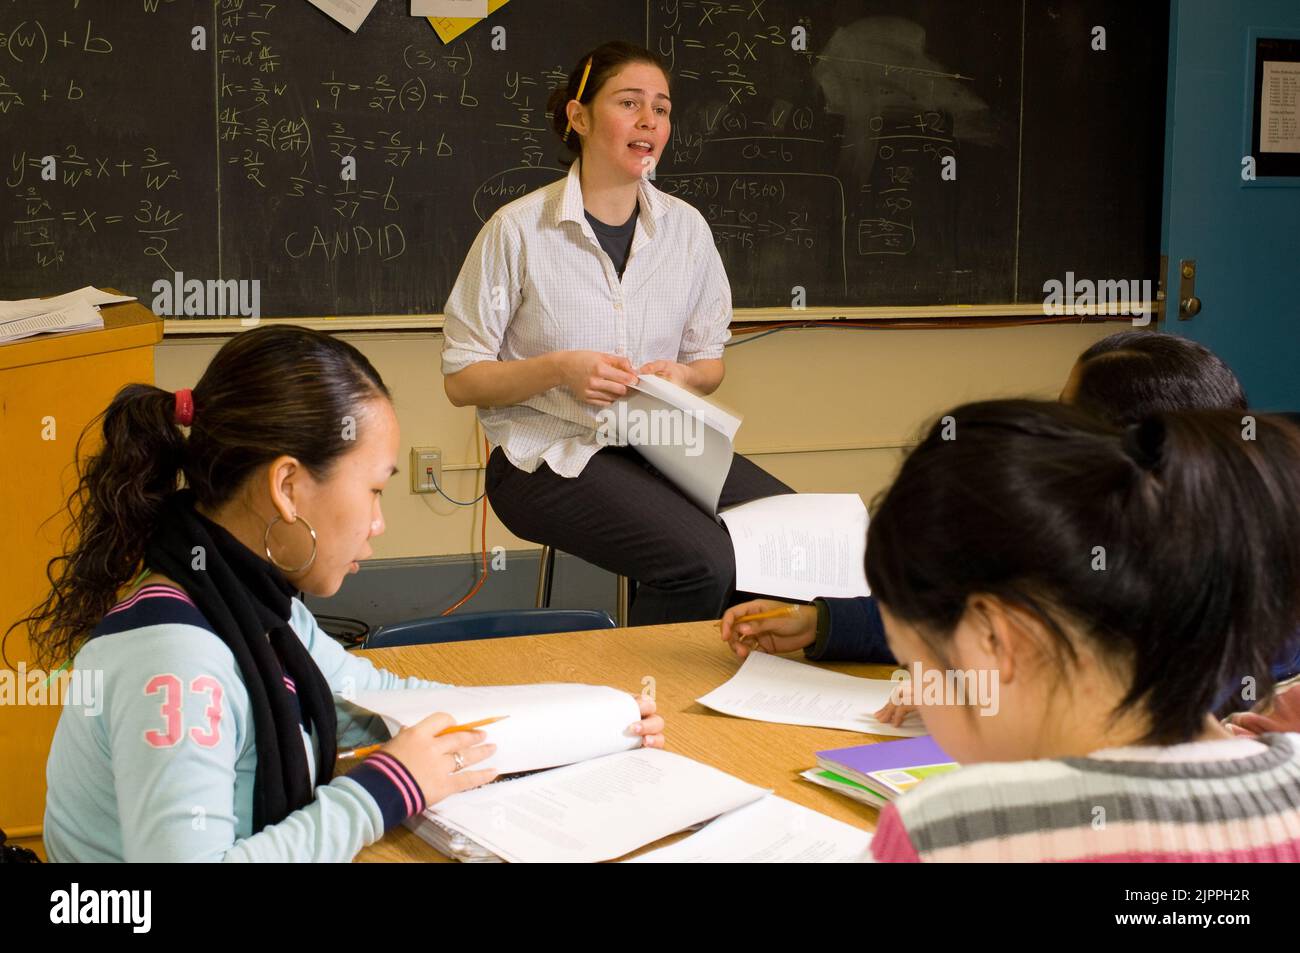 Bildung High School weibliche Lehrerin im Gespräch mit der Klasse, Bleistift hinter ihrem Ohr, Schülerinnen nach Thema mit Papieren auf dem Tisch Stockfoto